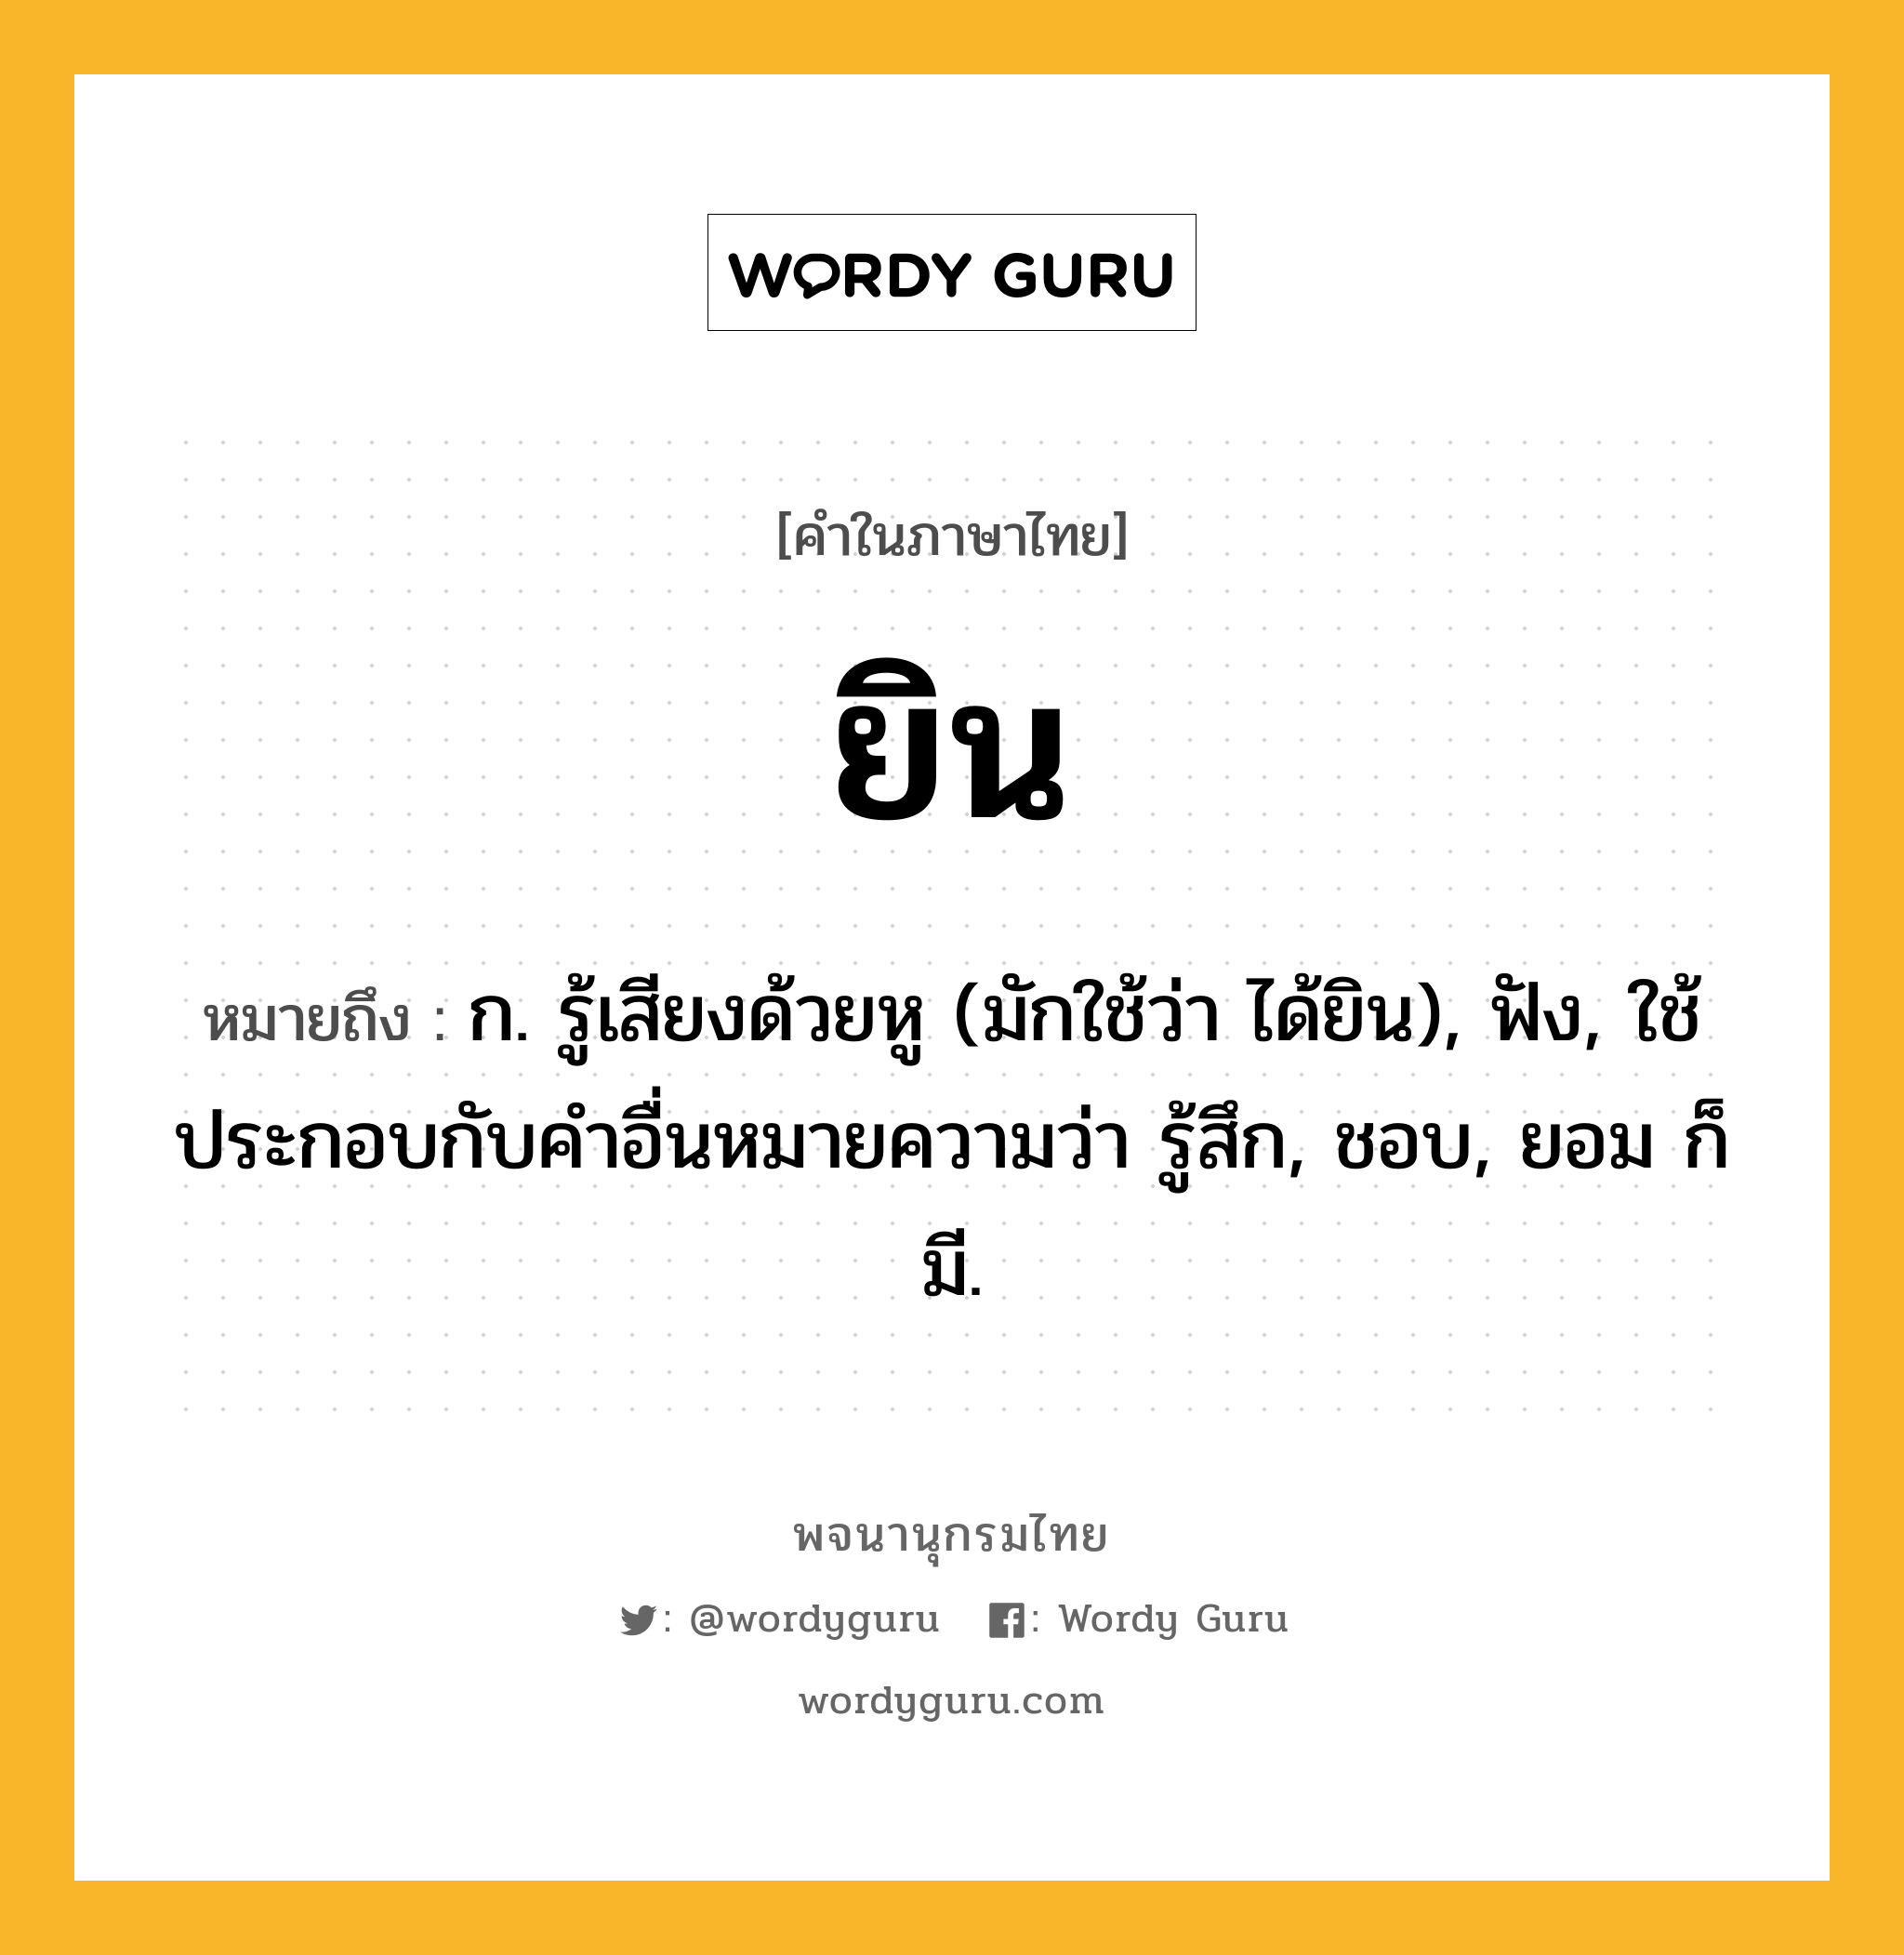 ยิน หมายถึงอะไร?, คำในภาษาไทย ยิน หมายถึง ก. รู้เสียงด้วยหู (มักใช้ว่า ได้ยิน), ฟัง, ใช้ประกอบกับคําอื่นหมายความว่า รู้สึก, ชอบ, ยอม ก็มี.